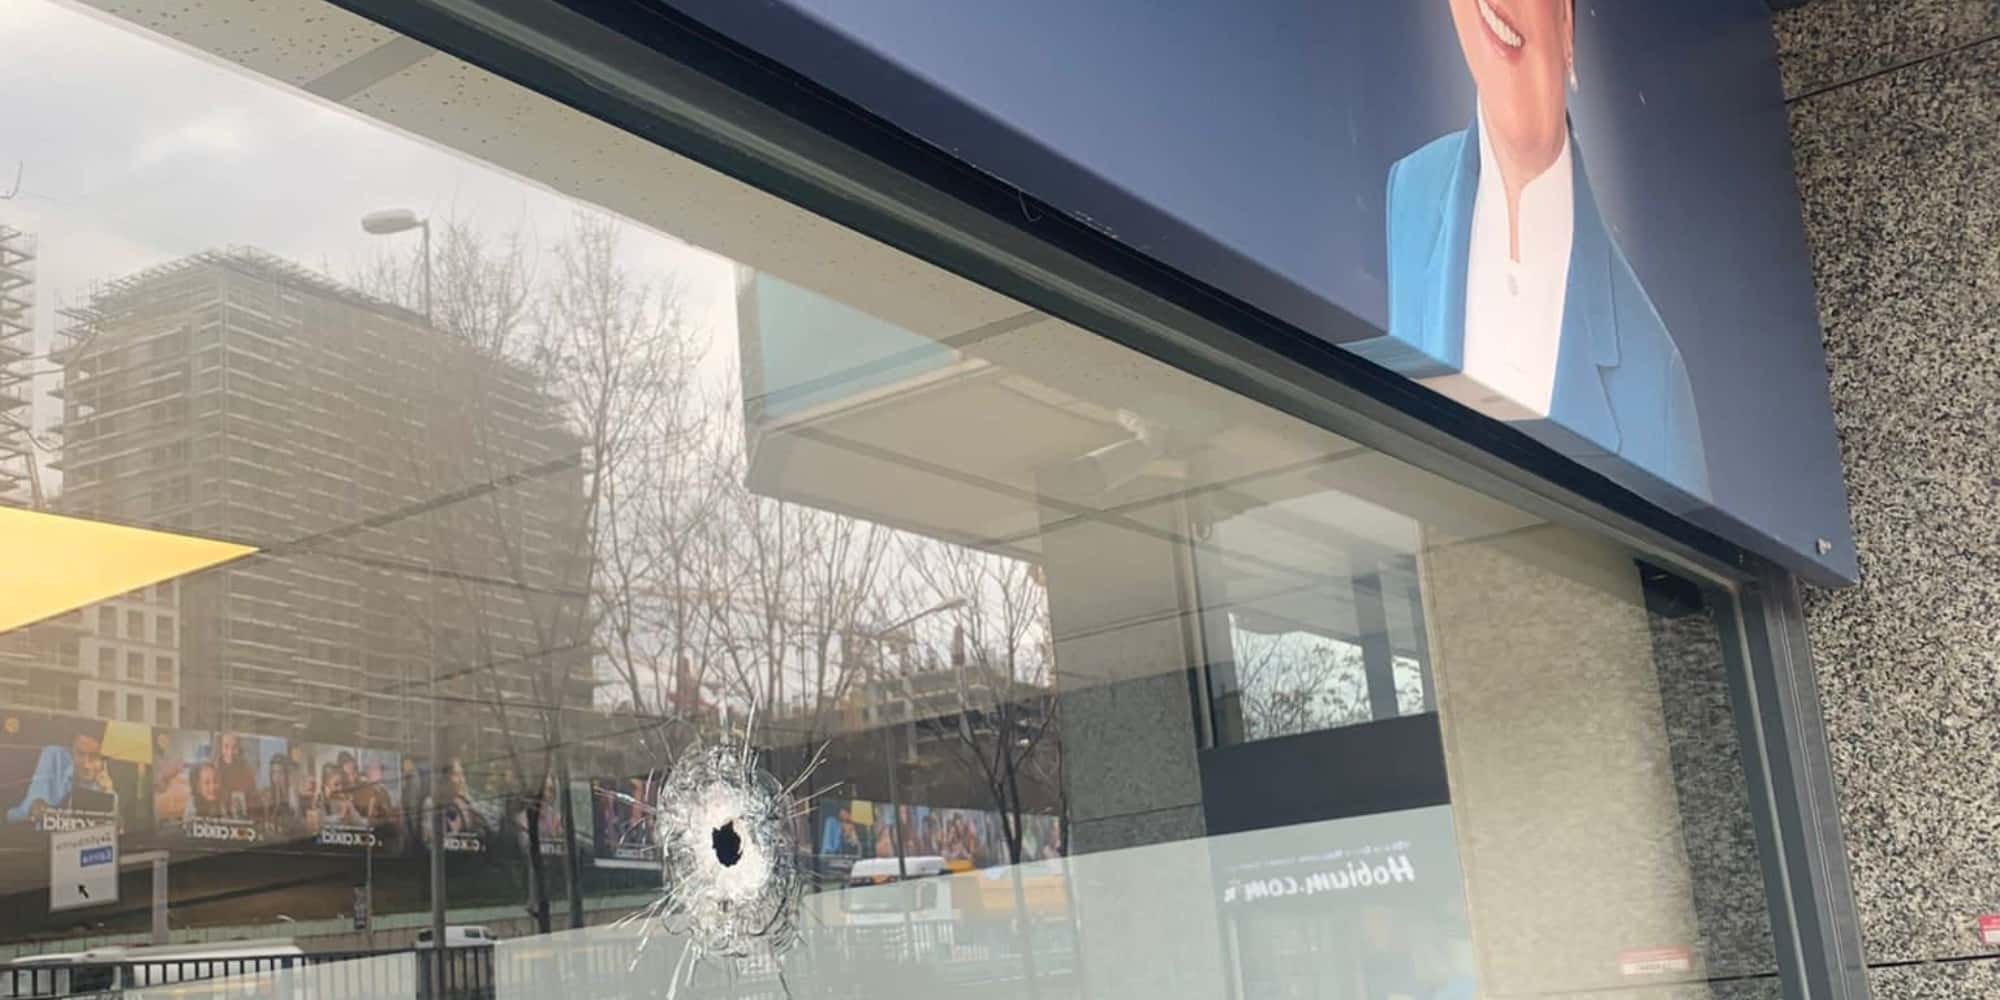 Konstantinoupoli 31 3 23 - Συναγερμός στην Τουρκία: Ένοπλη επίθεση εναντίον του Καλού Κόμματος της Μεράλ Ακσενέρ στην Κωνσταντινούπολη (βίντεο)